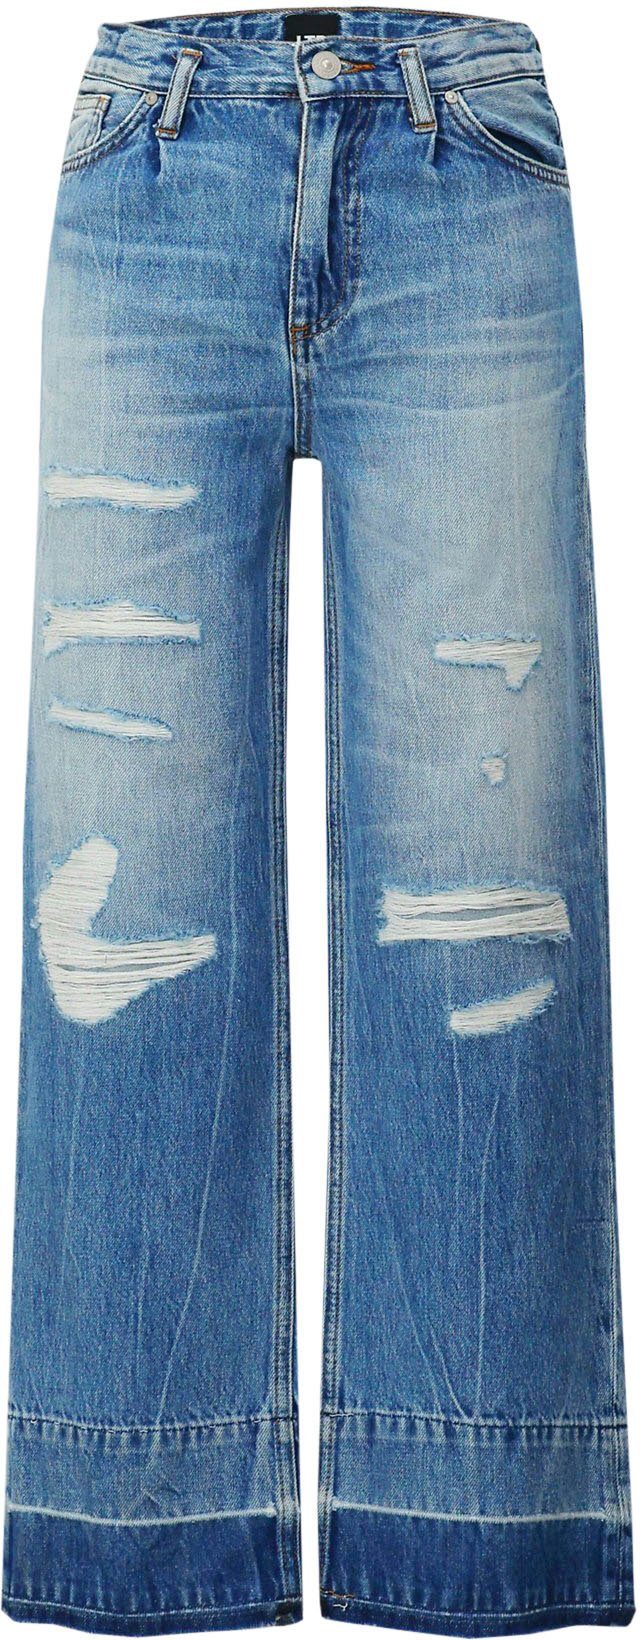 GIRLS Destroyed-Effekten, Weite LTB FELICIA mit Jeans for